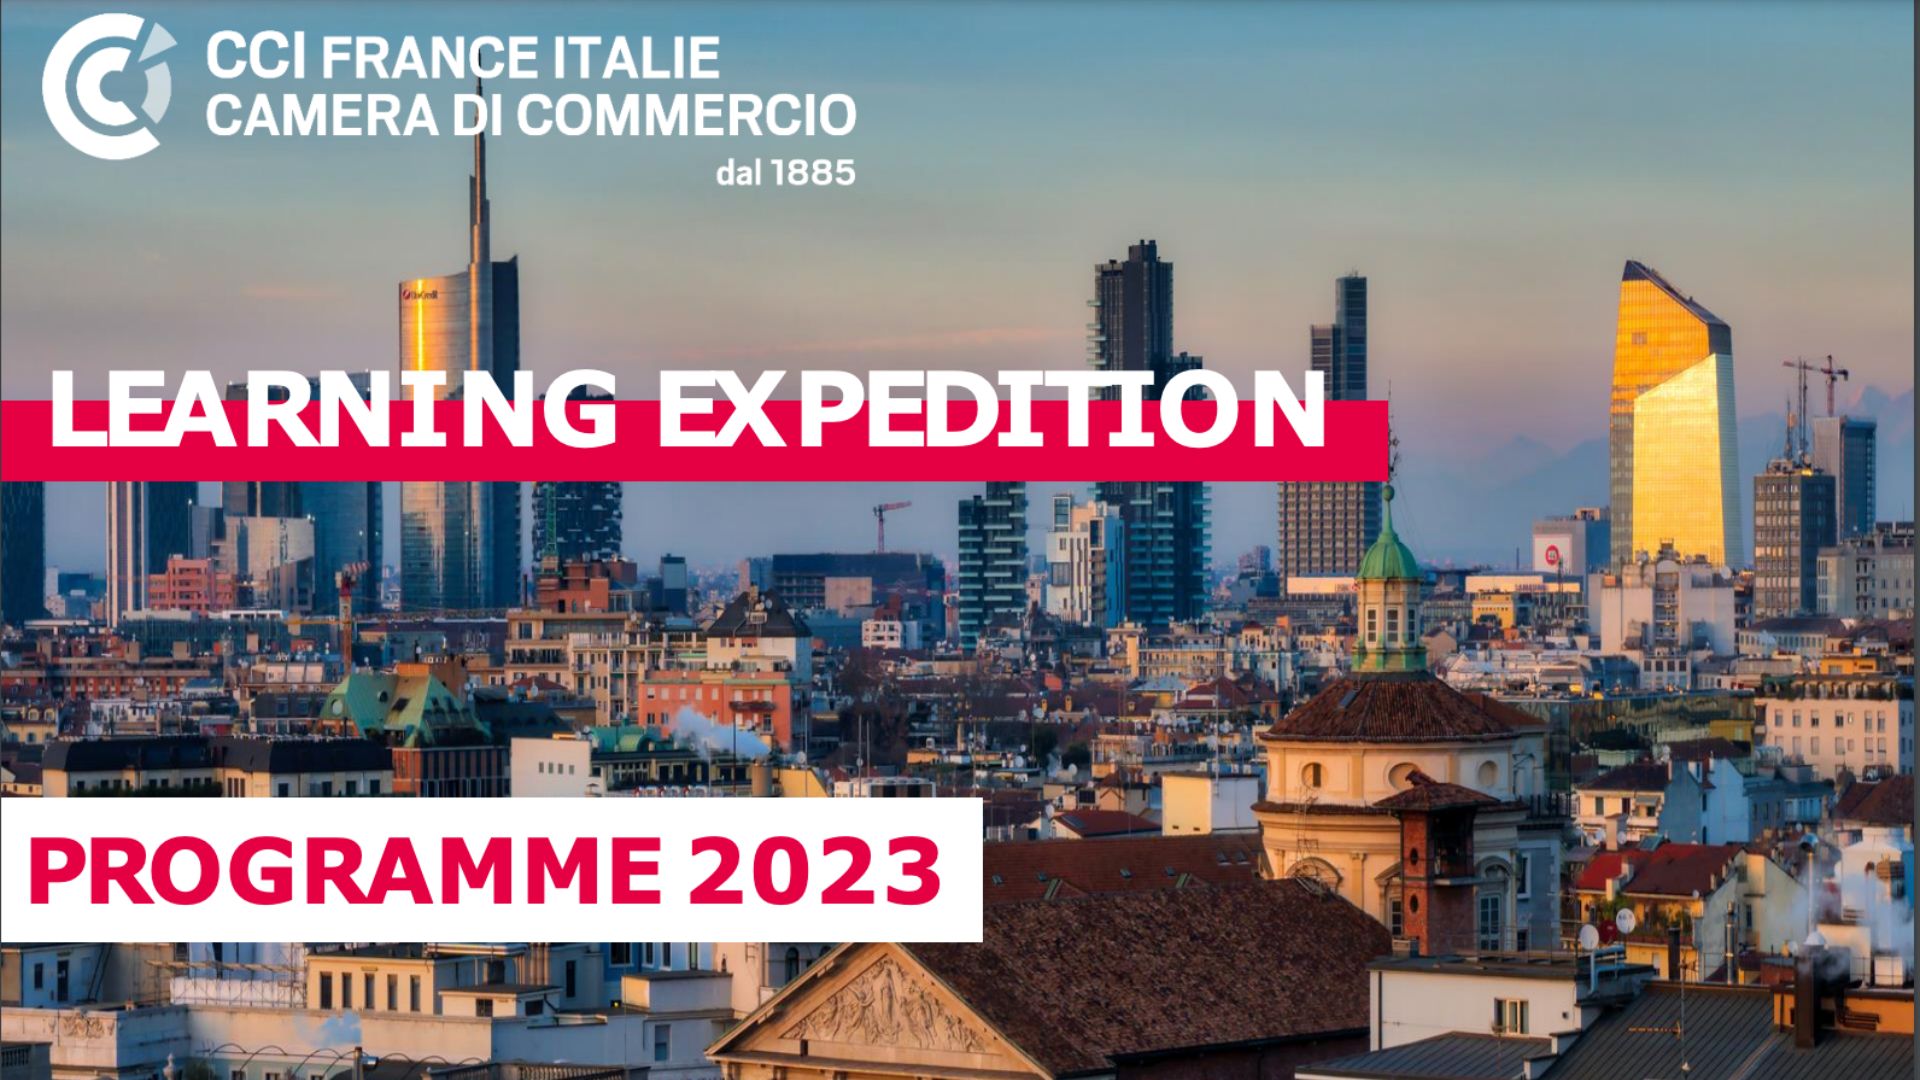 Les Learning Expeditions, un programme de formation de la CCI France Italie